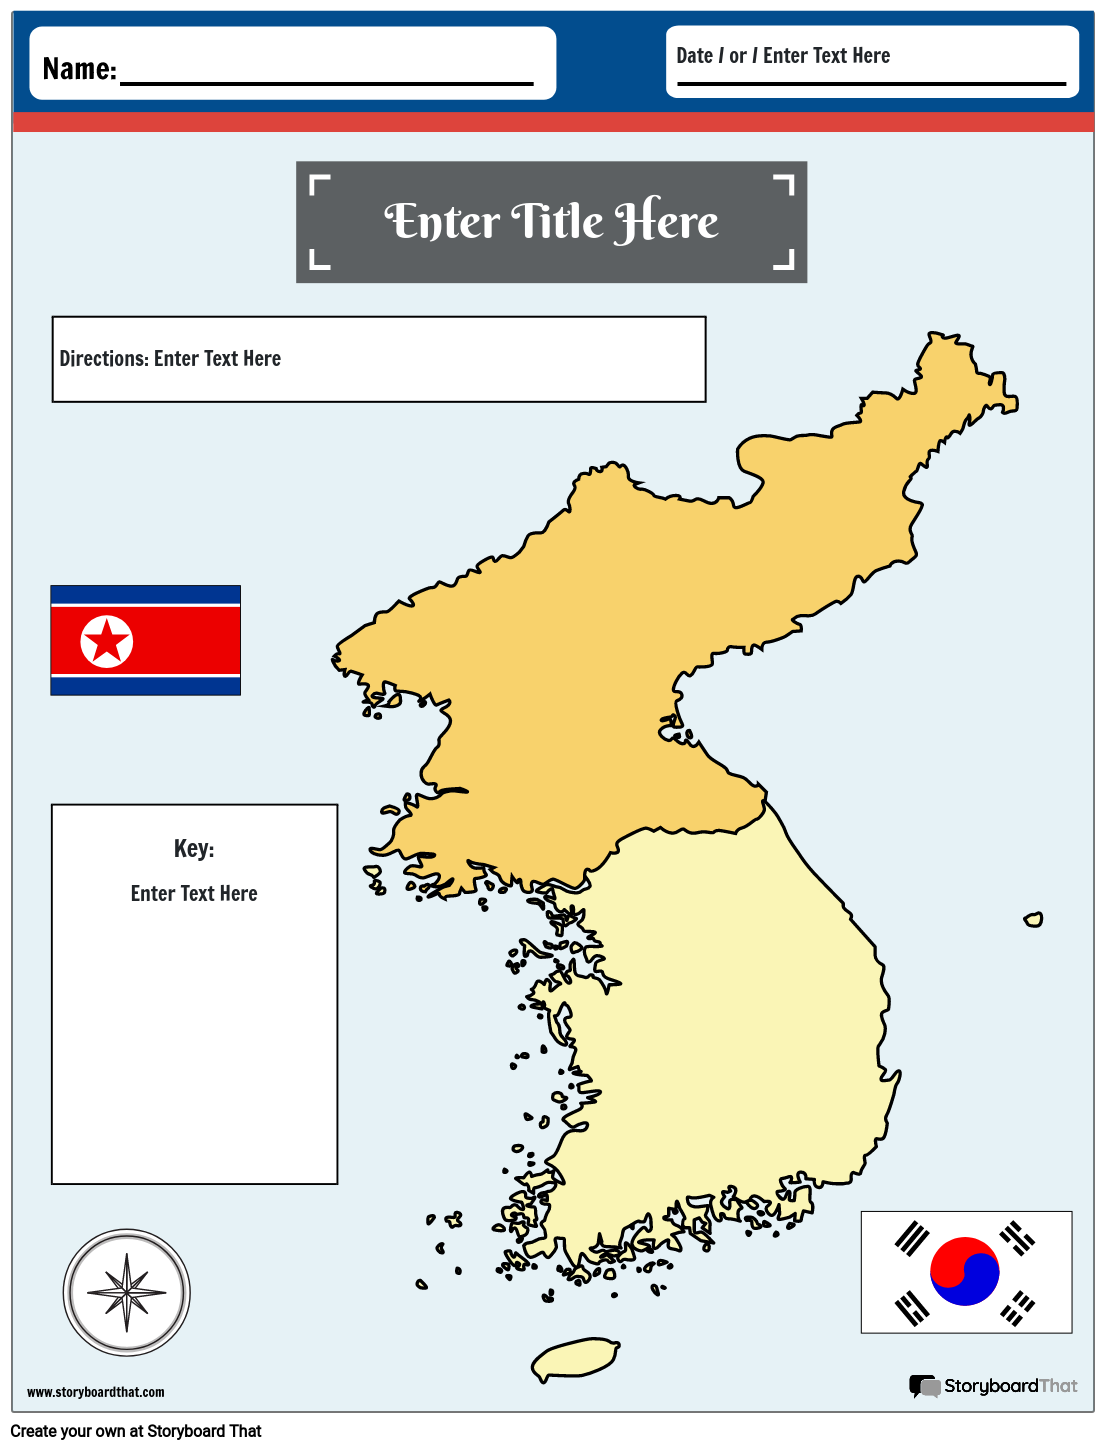 कोरिया नक्शा